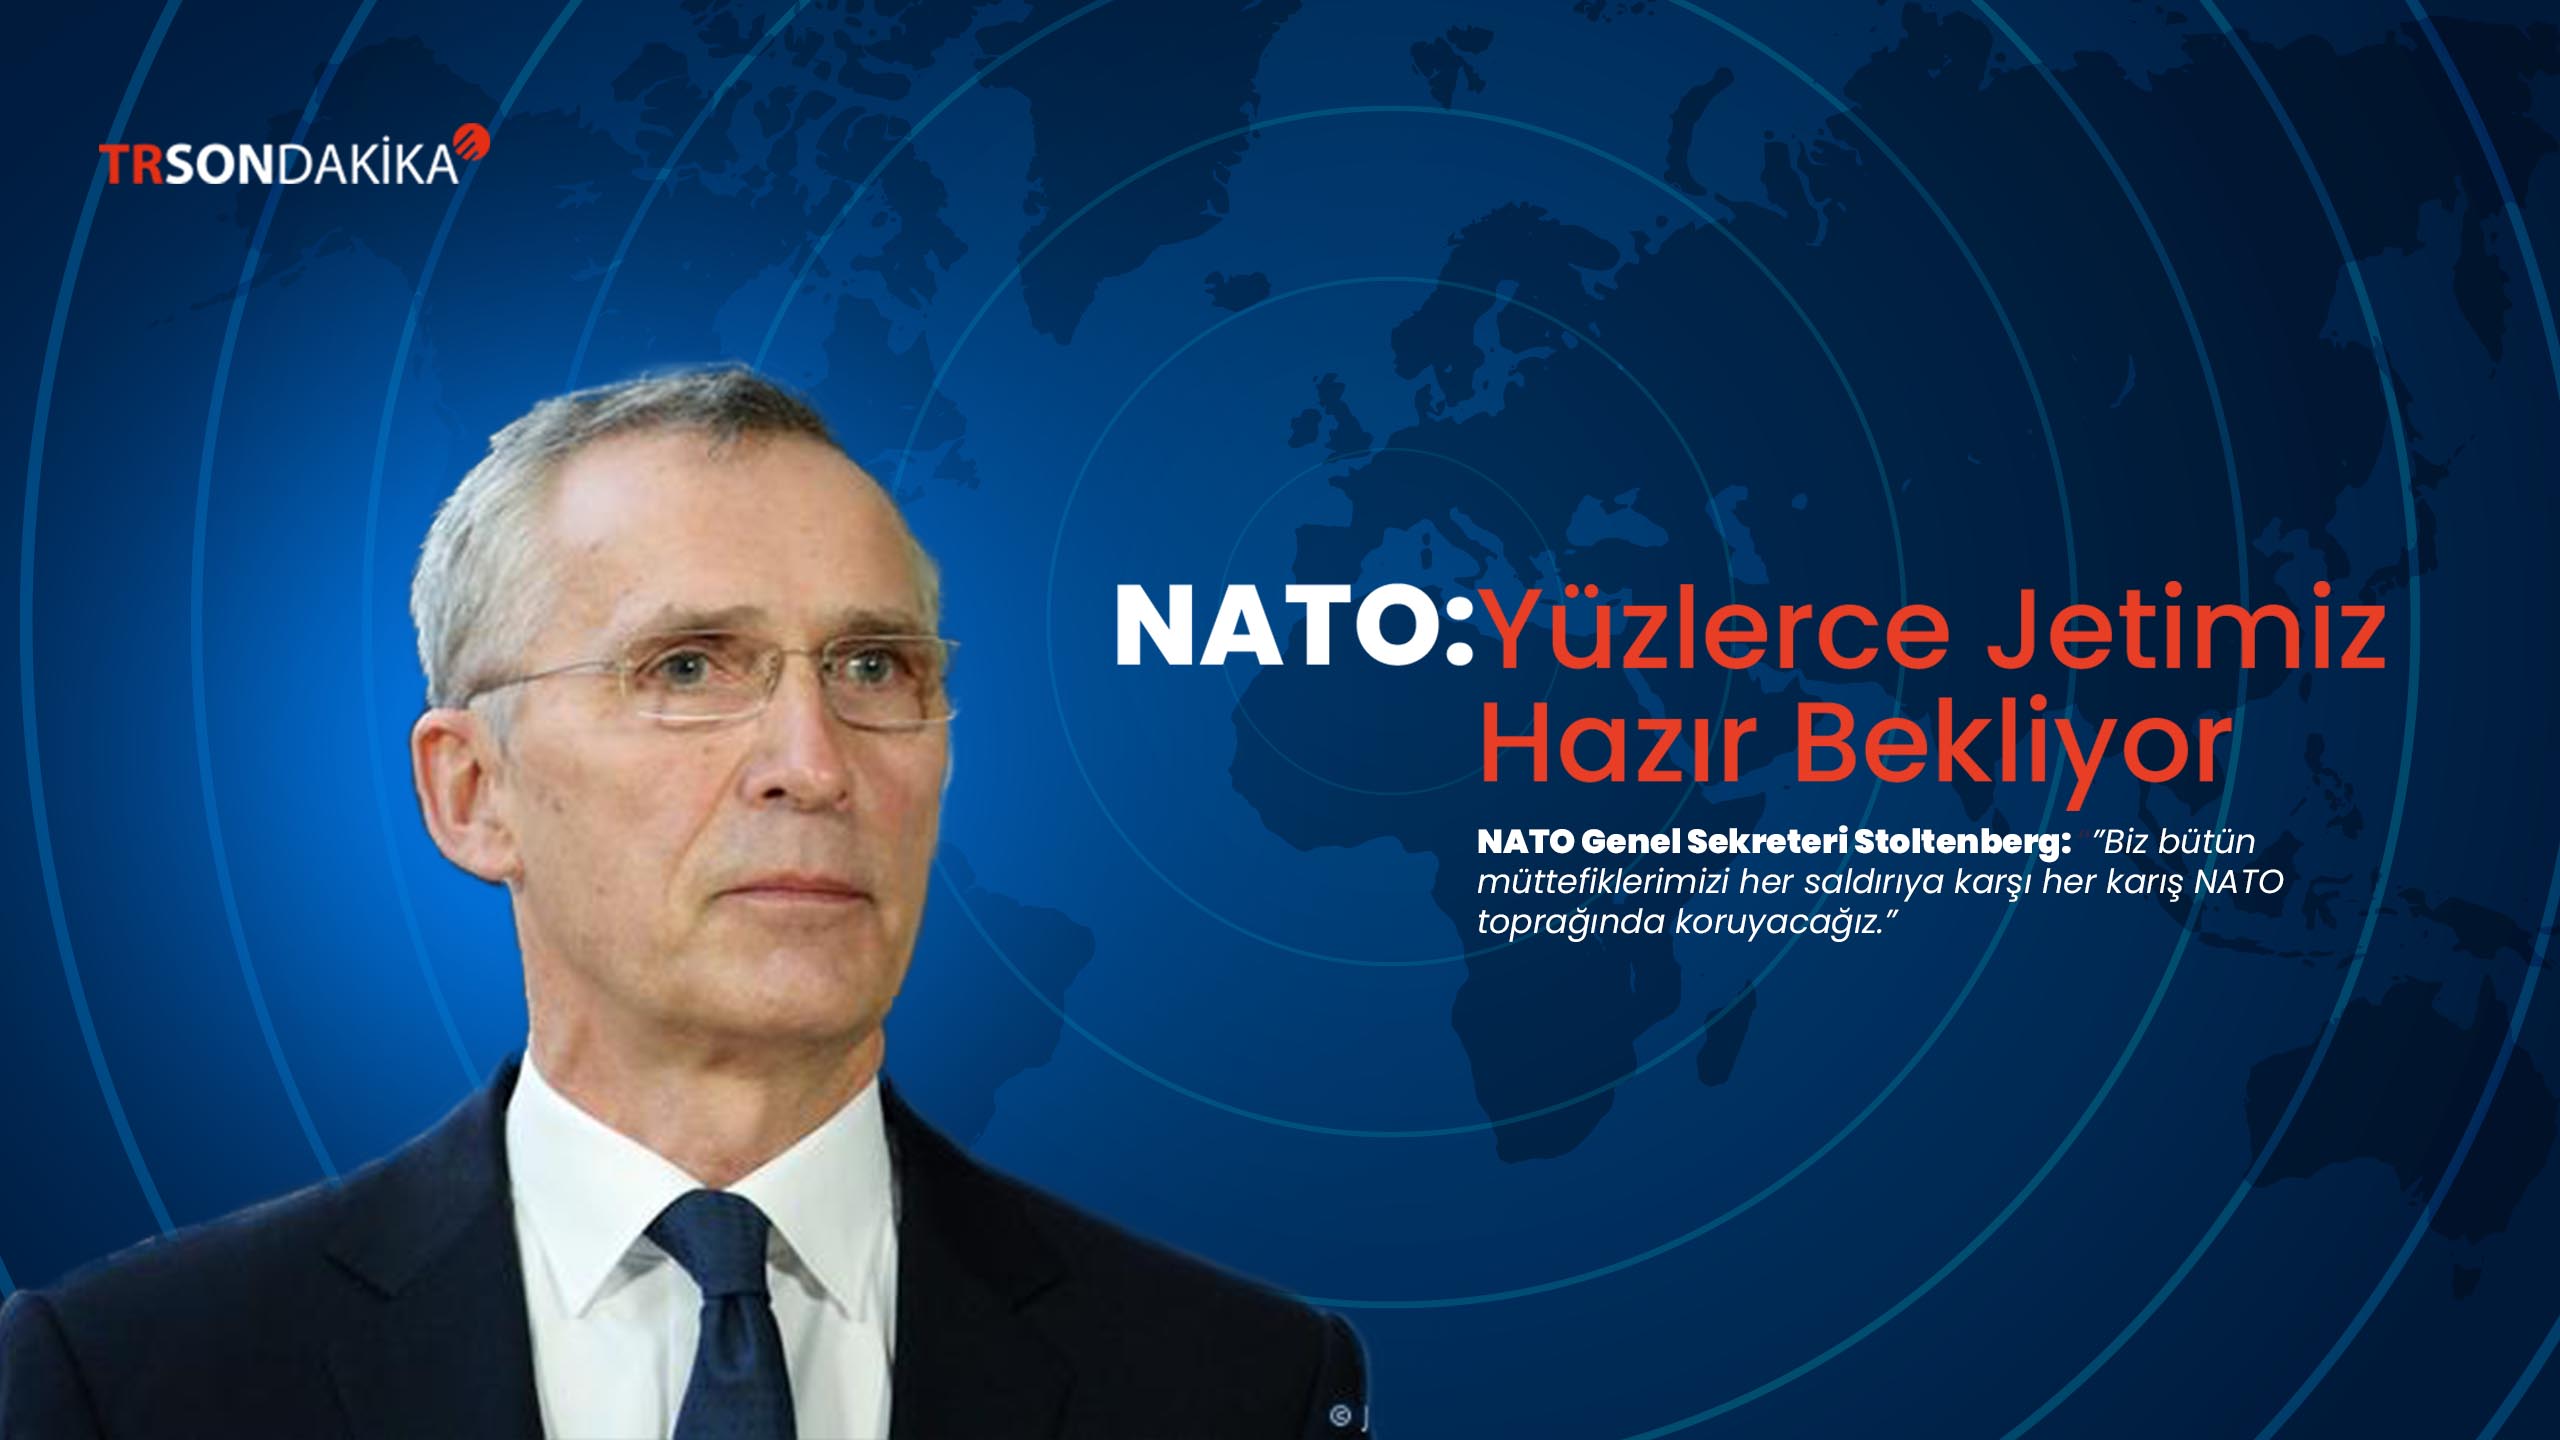 NATO: Yüzlerce Jetimiz Hazır Bekliyor